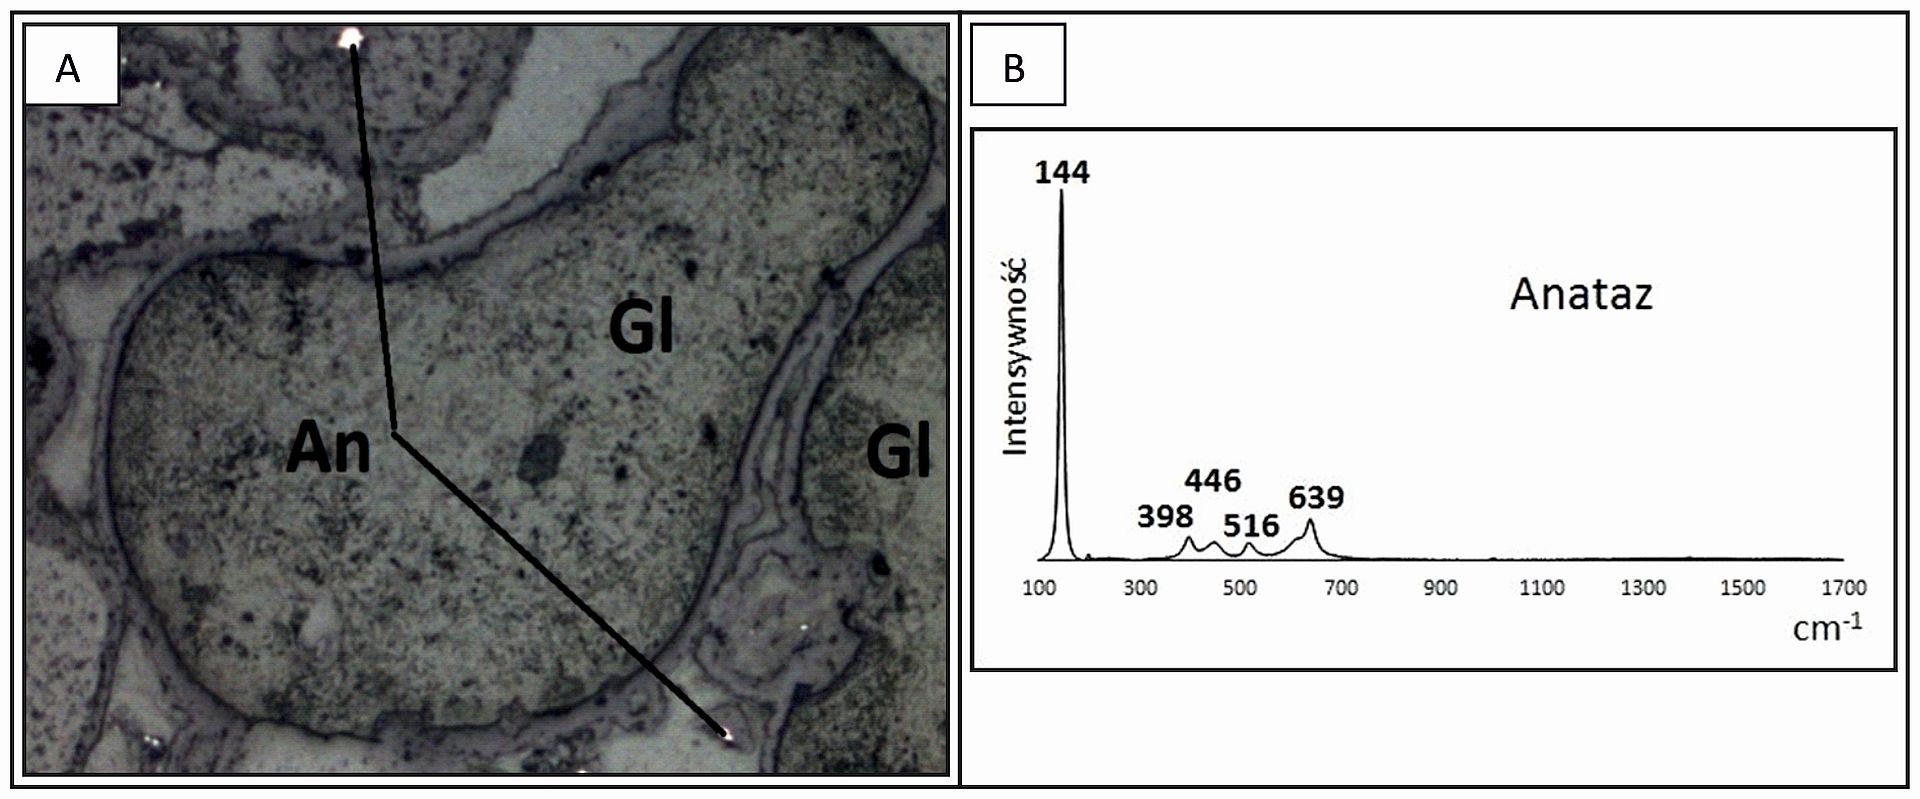 A - wrostki anatazu (An) w obrębie ziaren glaukonitu (Gl); B - widmo Ramana anatazu.